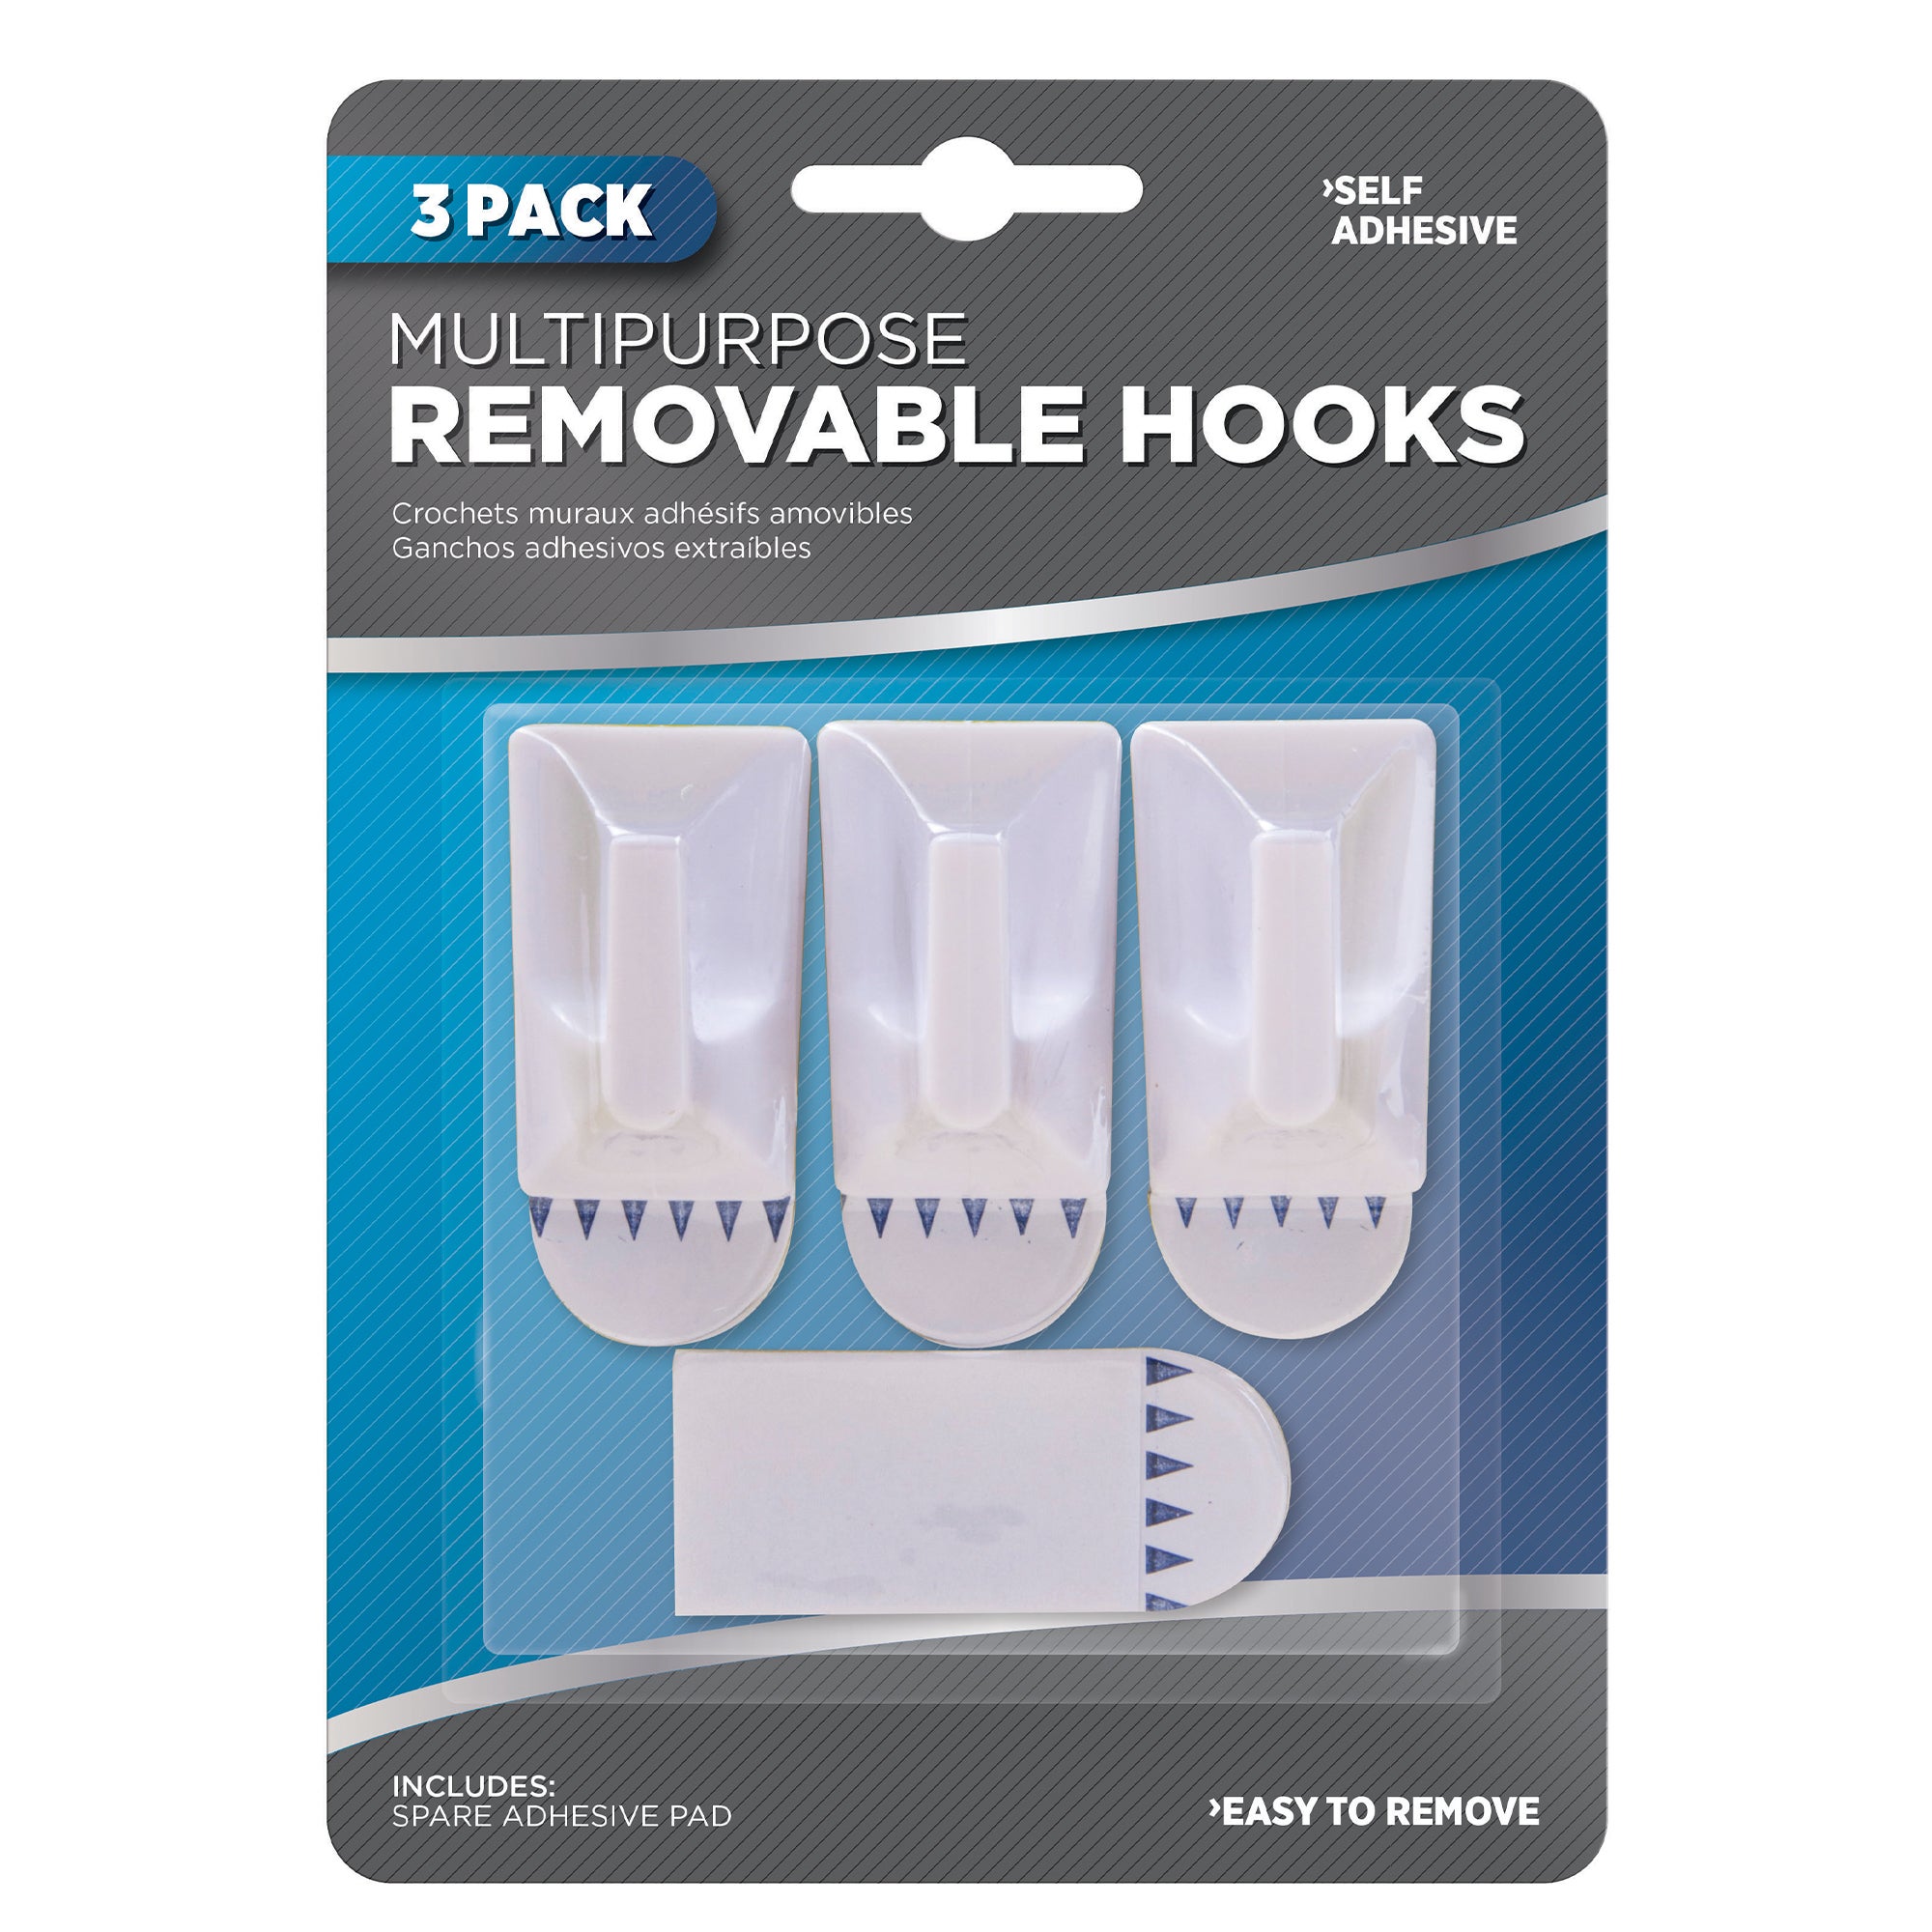 Adhesive Hooks Variety Pack #3713